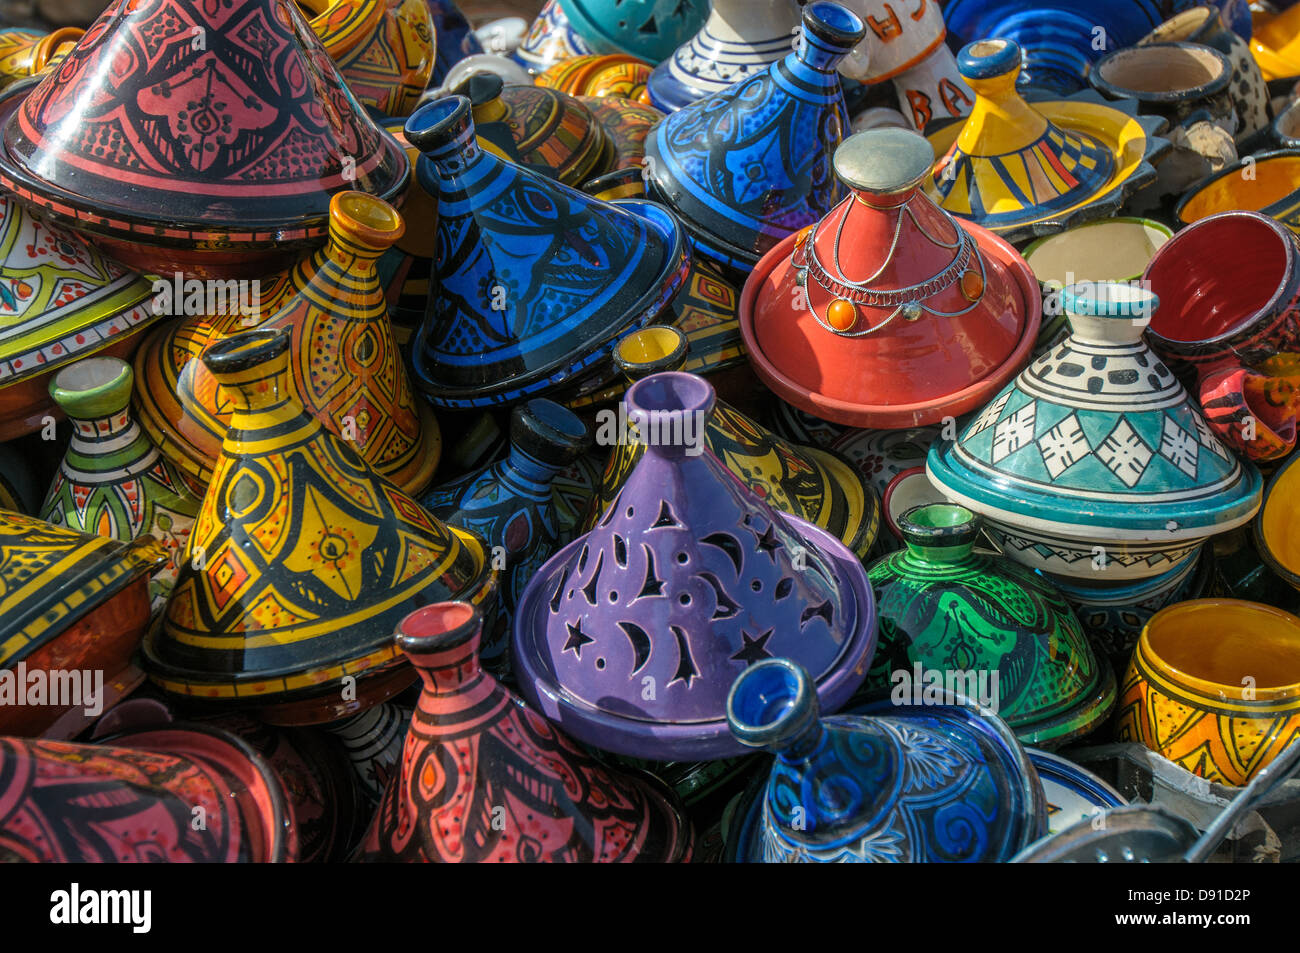 Tajines in the market, Morocco Stock Photo